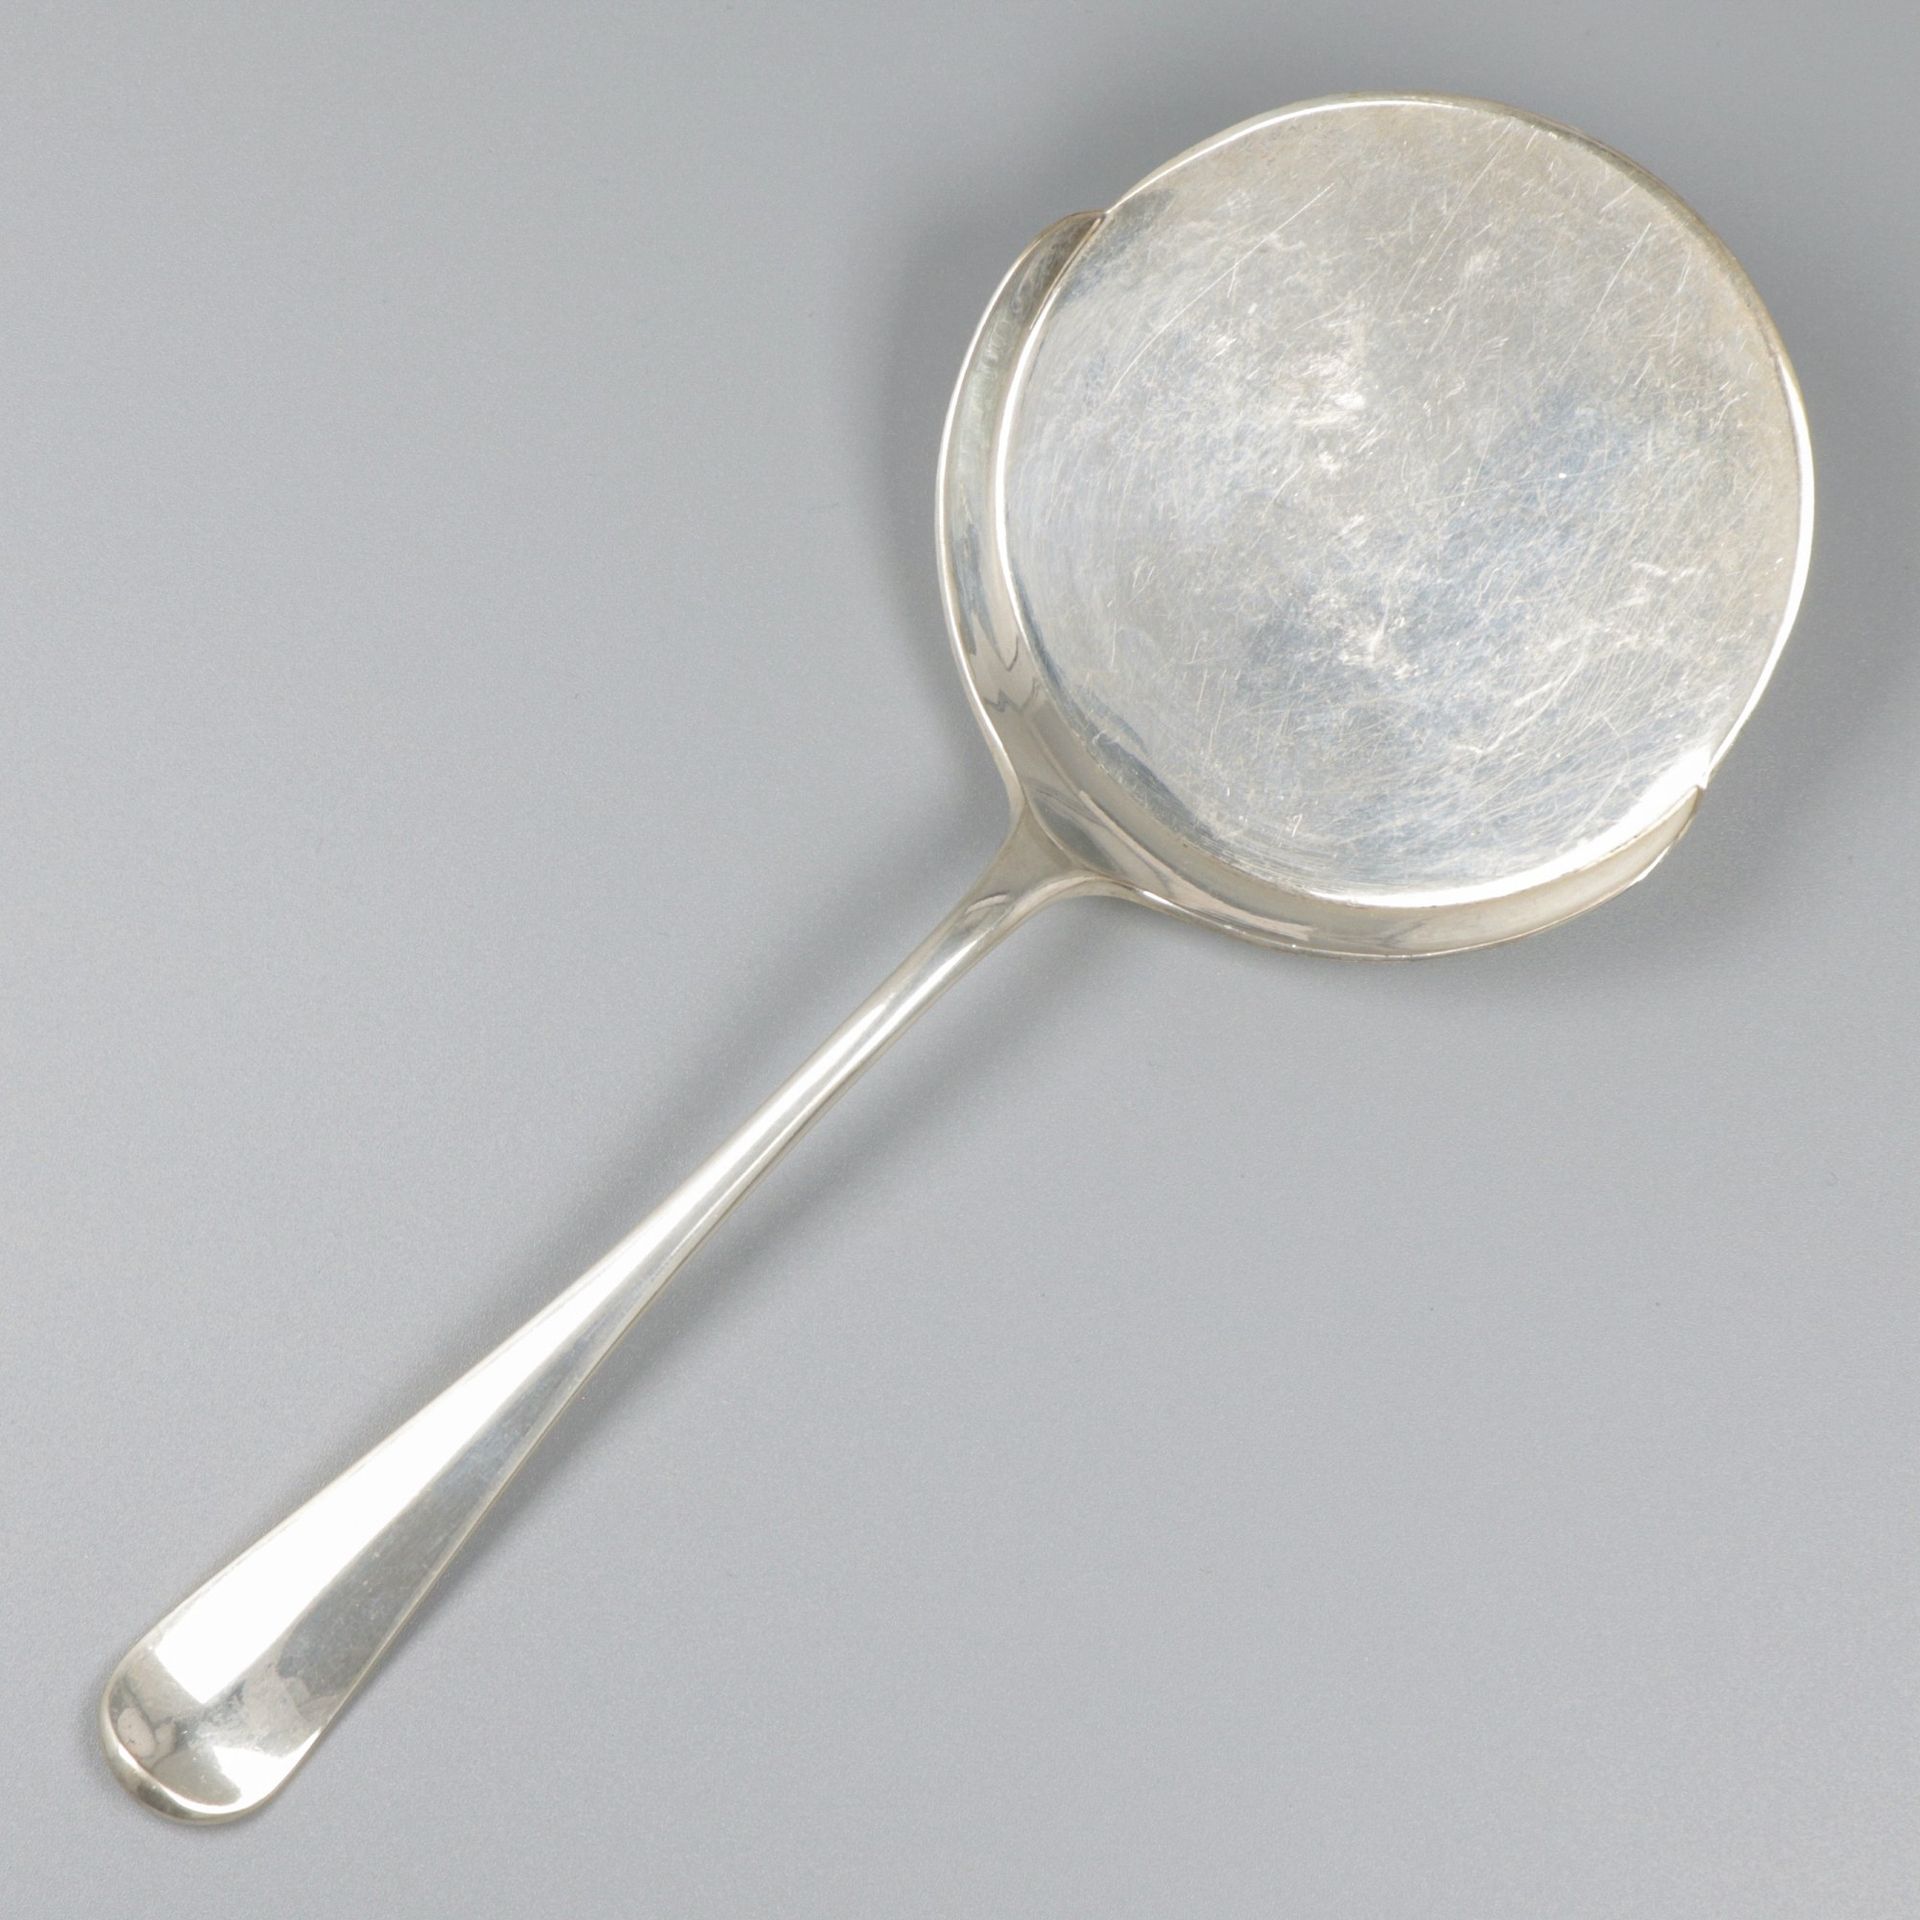 Fried egg scoop silver. ''Hollands Lof''. The Netherlands, Zeist, Gerritsen & va&hellip;